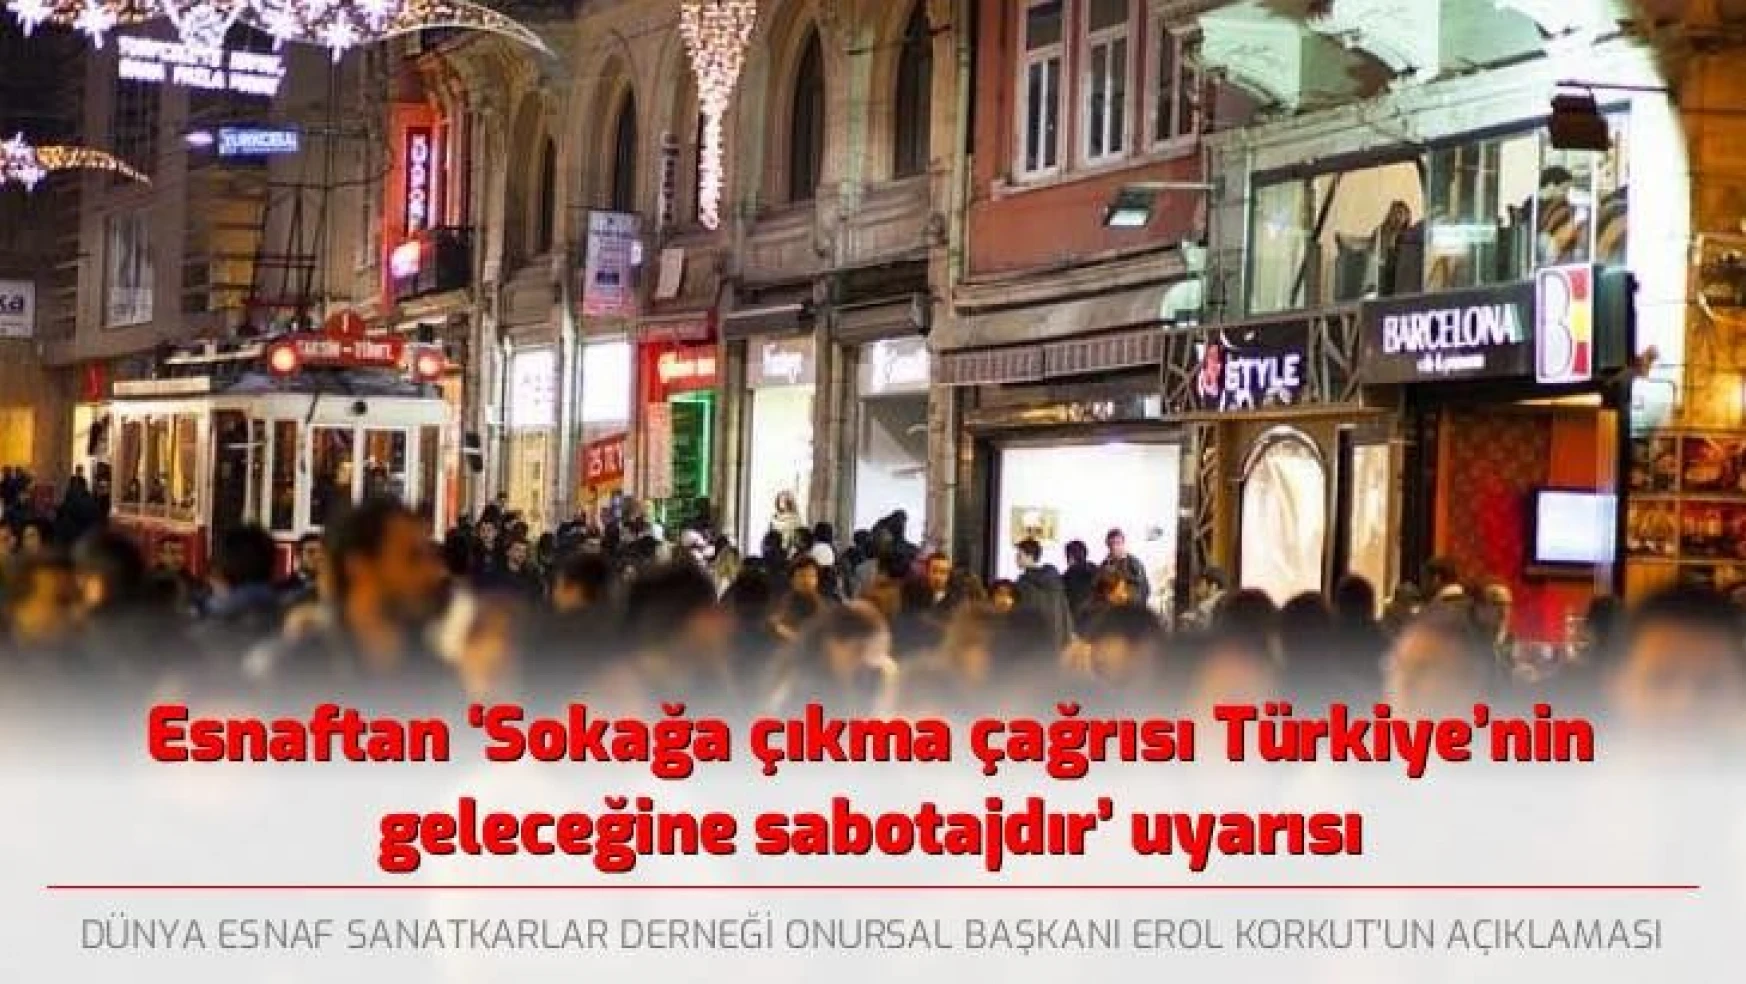 Esnaftan 'Sokağa çıkma çağrısı Türkiye'ye sabotajdır' uyarısı